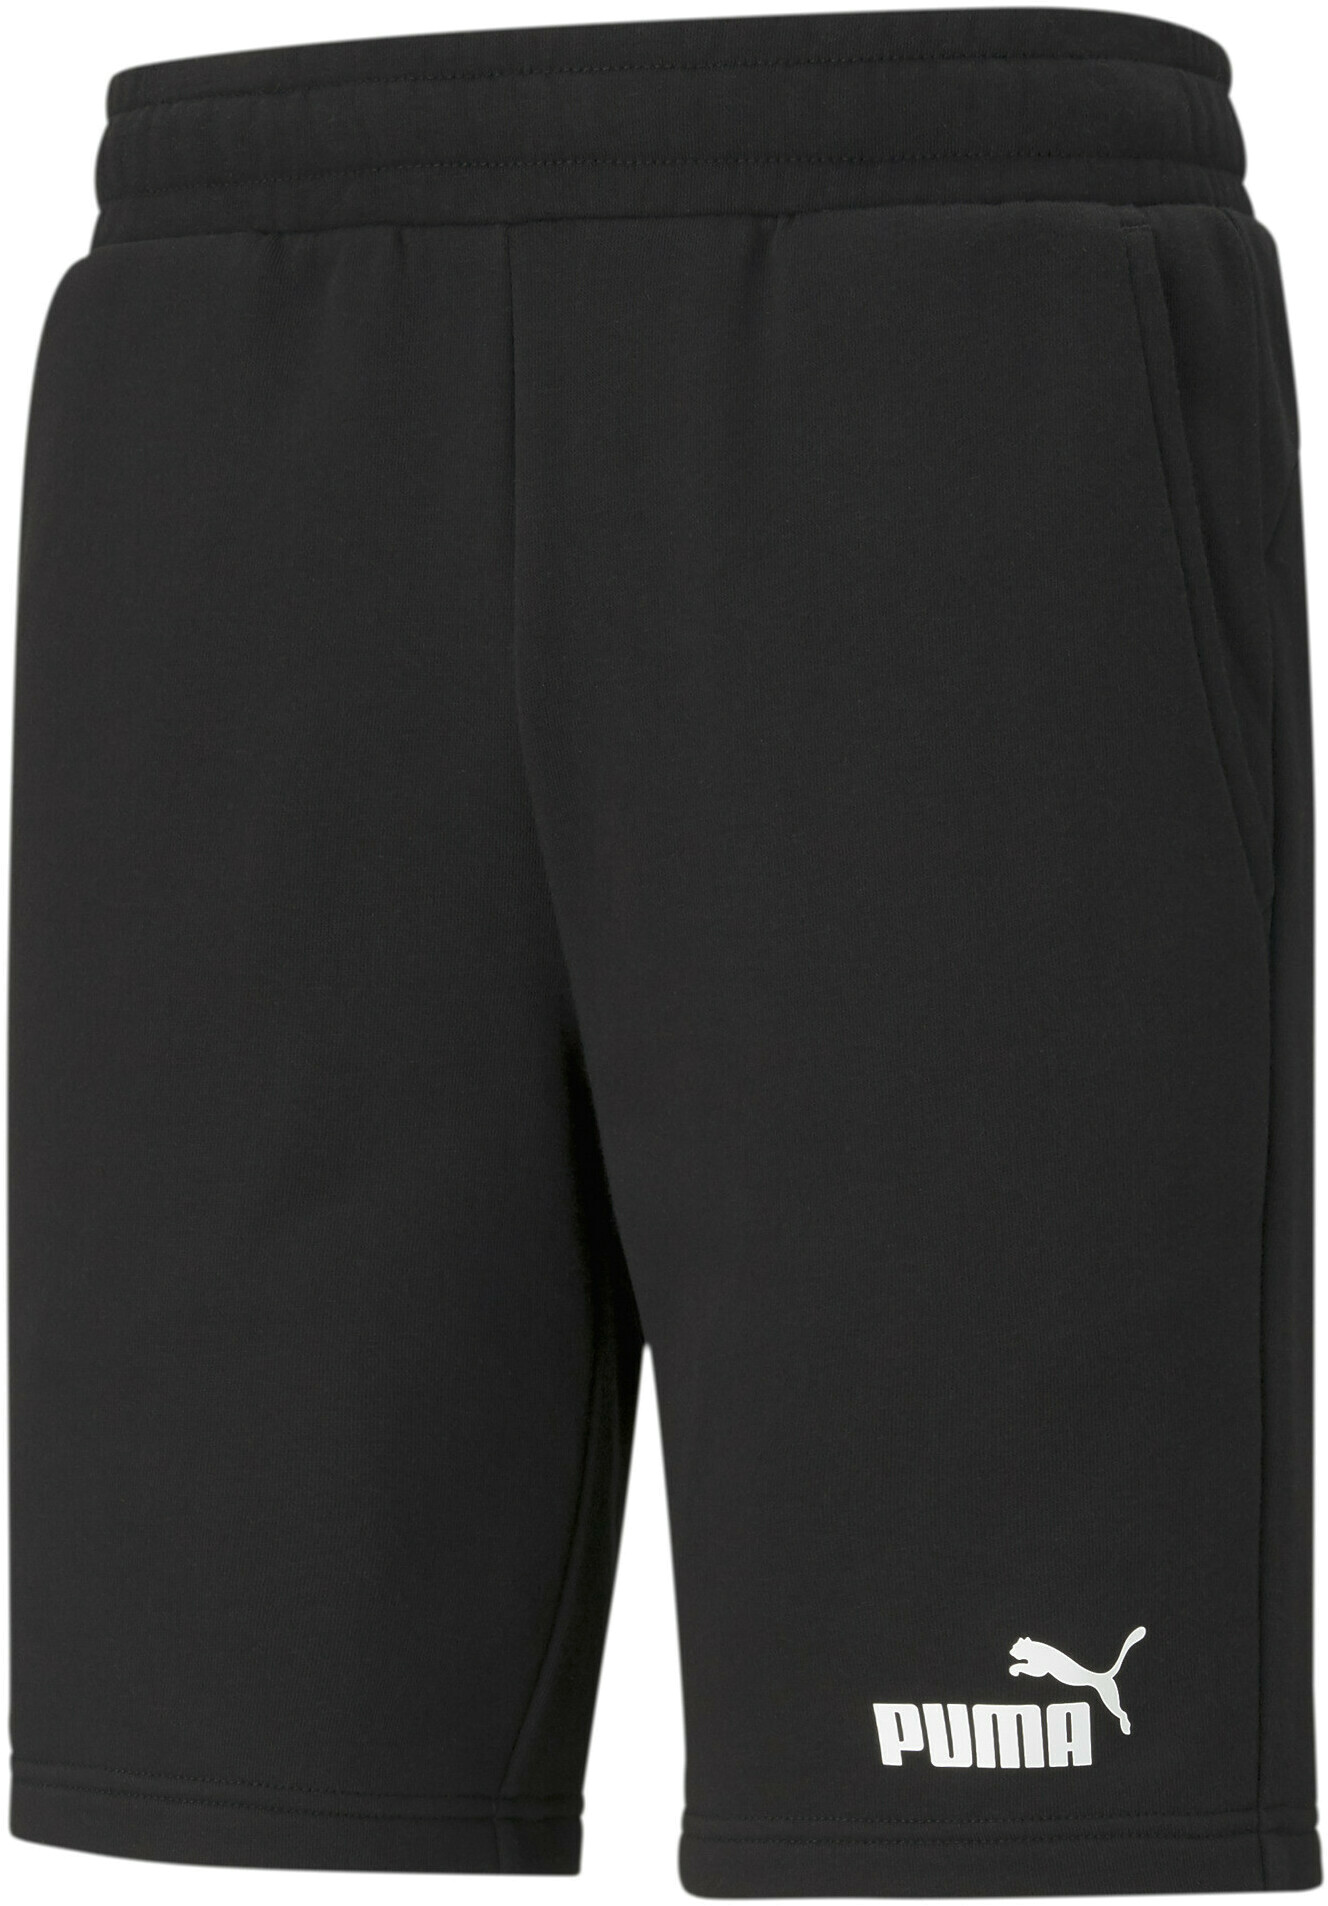 Спортивные шорты мужские PUMA 58674201 черные XS